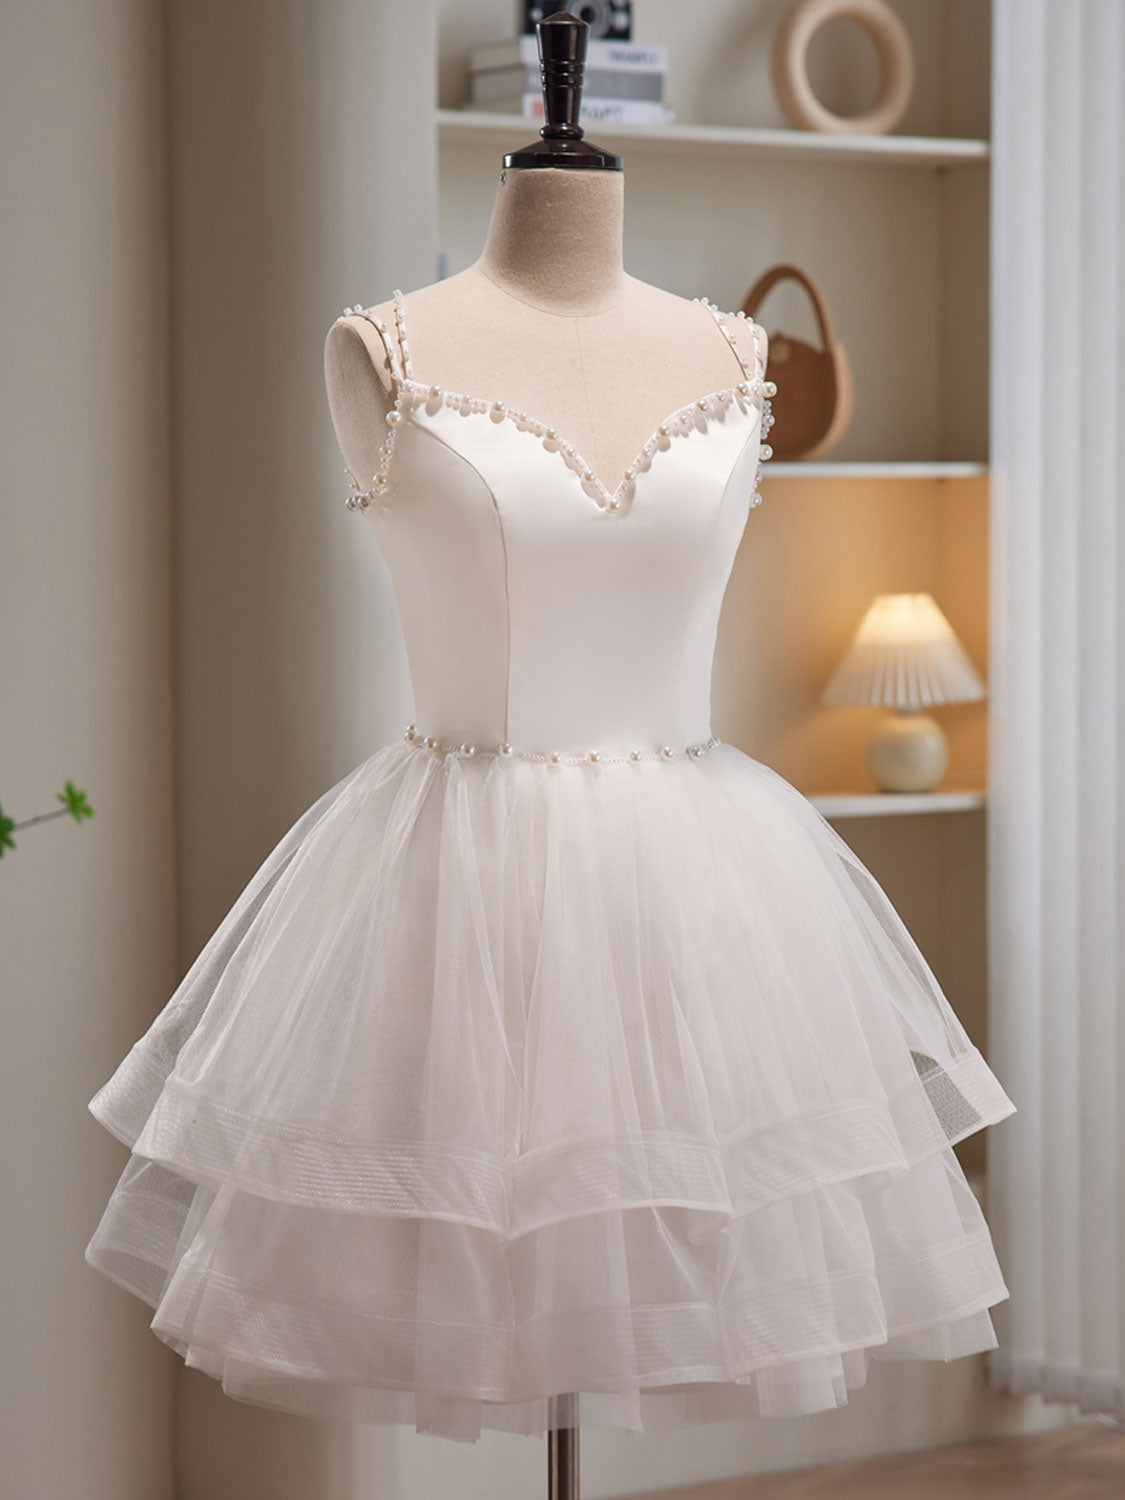 20+ Short White Homecoming Dress